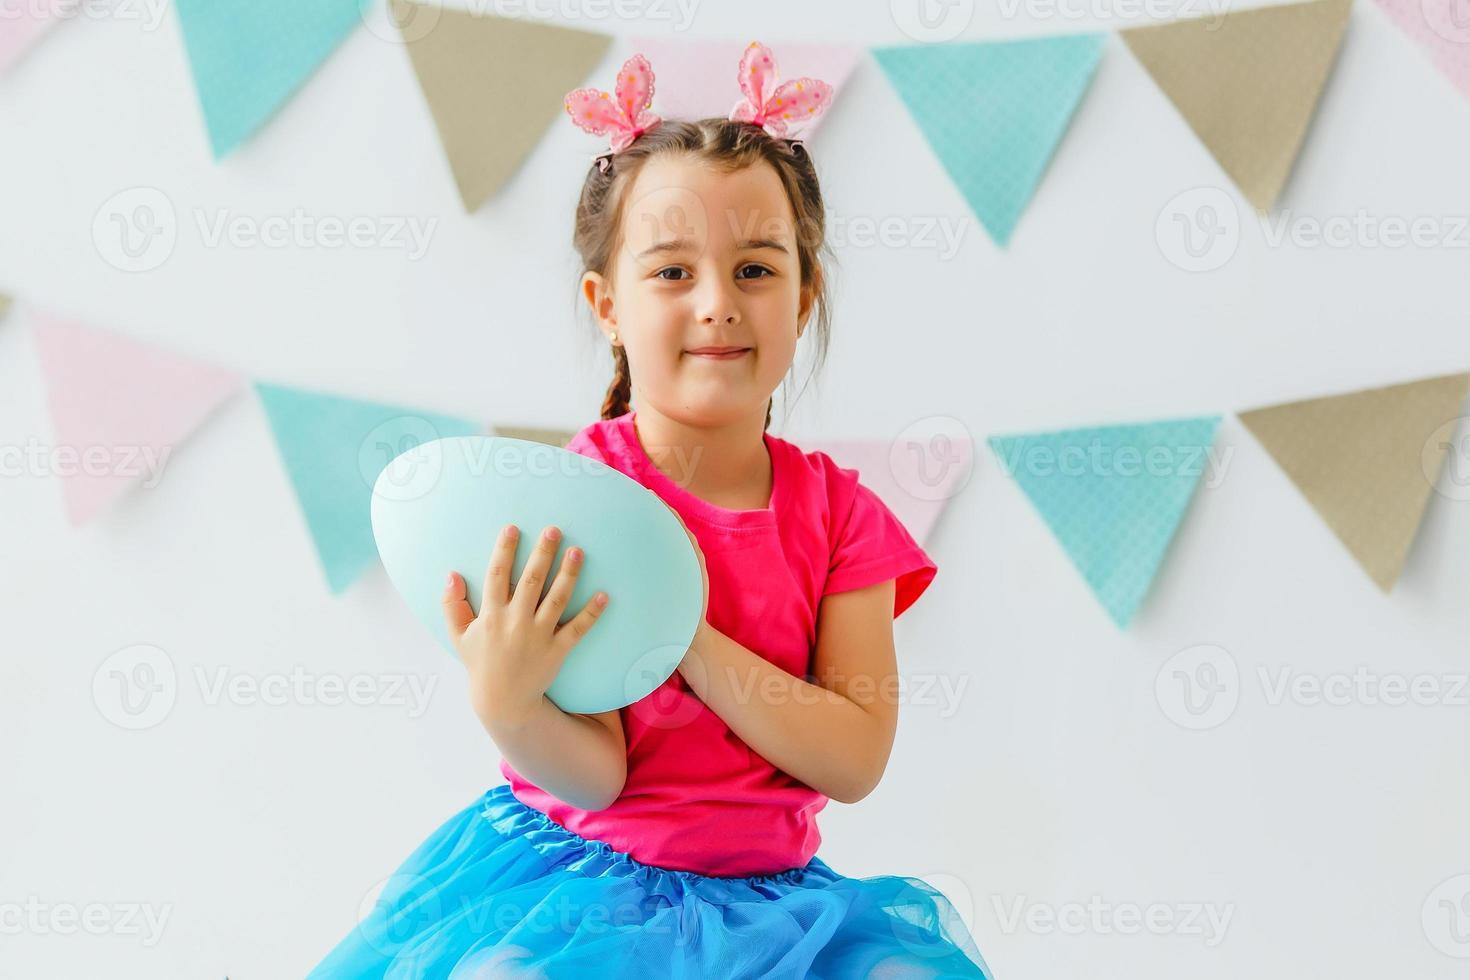 felices pascuas una hermosa niña pintando huevos de pascua. familia feliz preparándose para pascua. linda niña pequeña con orejas de conejo el día de pascua. foto